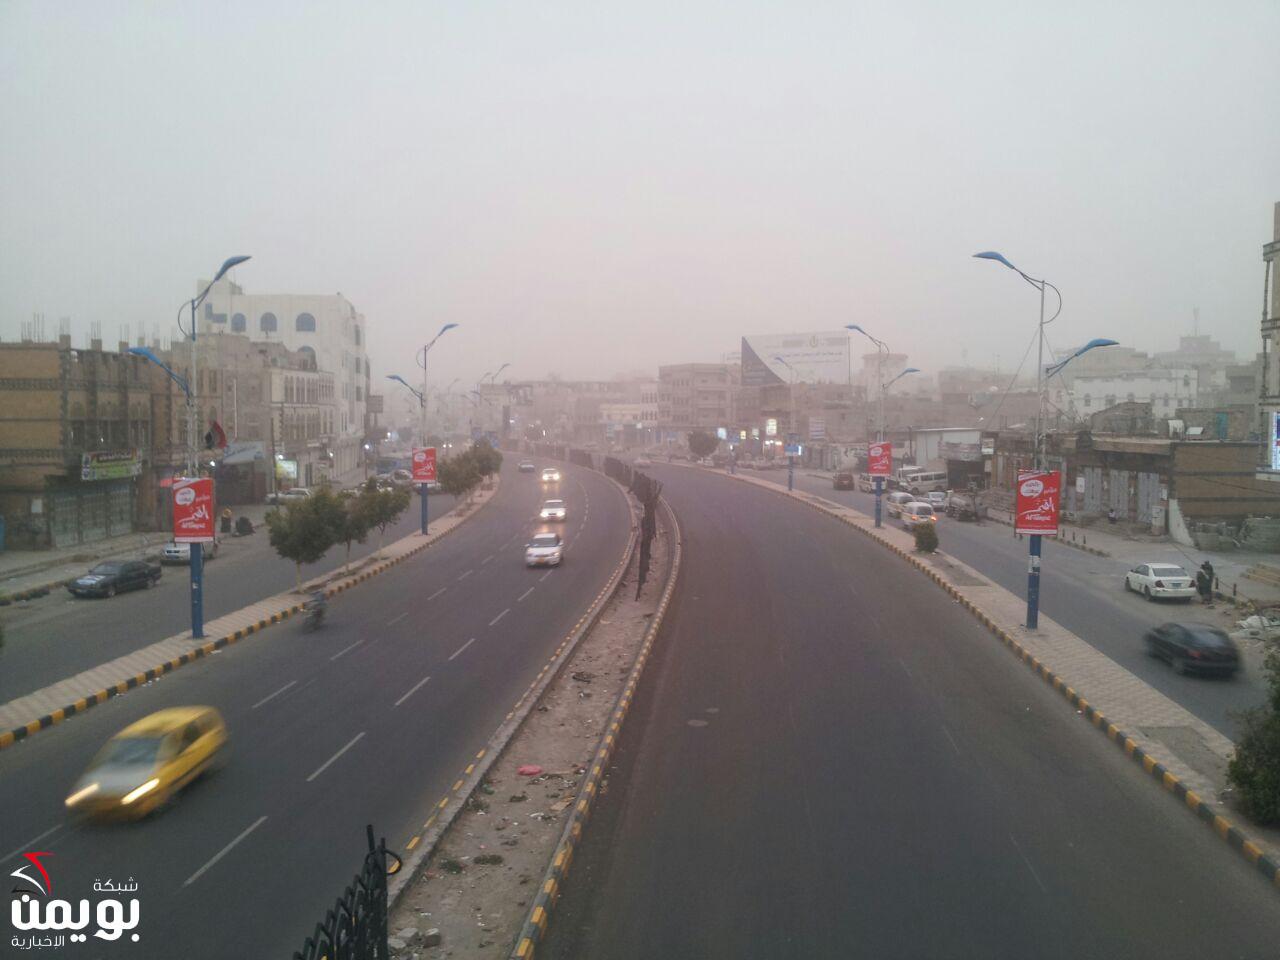  #8203;توتر واستنفار غير مسبوق "ماذا يحدث في شوارع الستين وعصر والرباط بالعاصمة صنعاء؟"